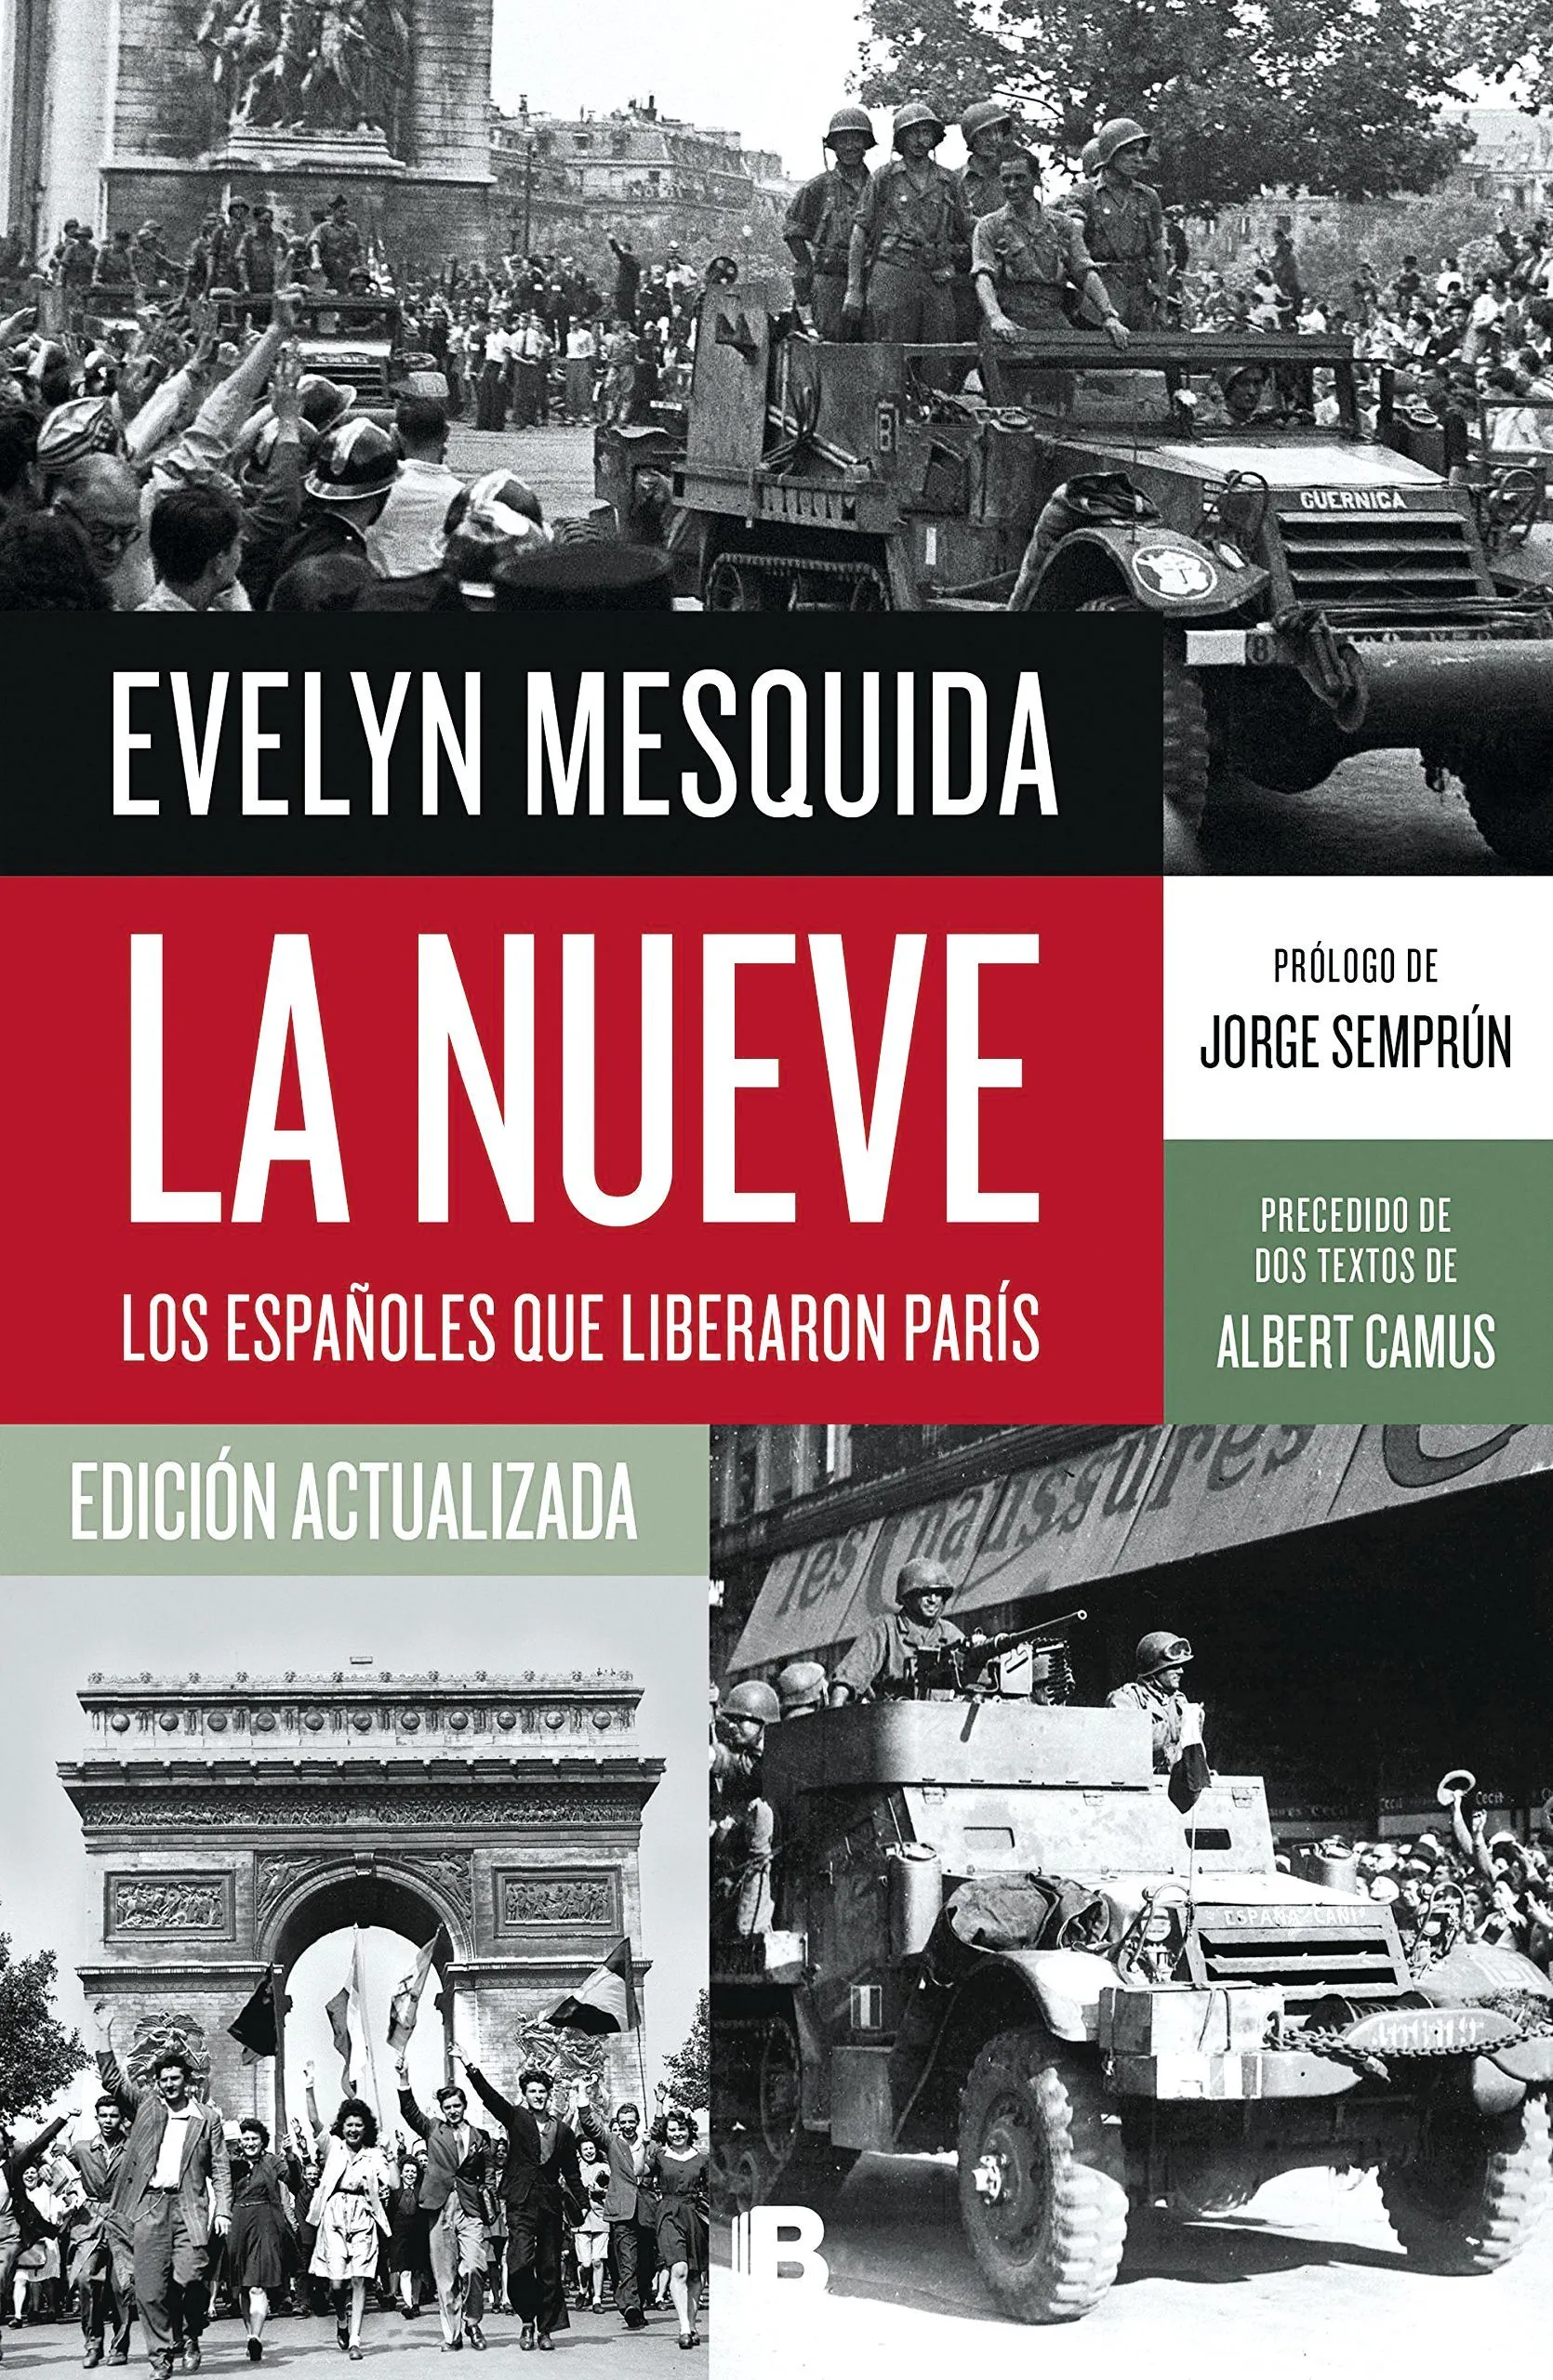 Evelyn Mesquida, La Nueve, edición actualizada, 2016.